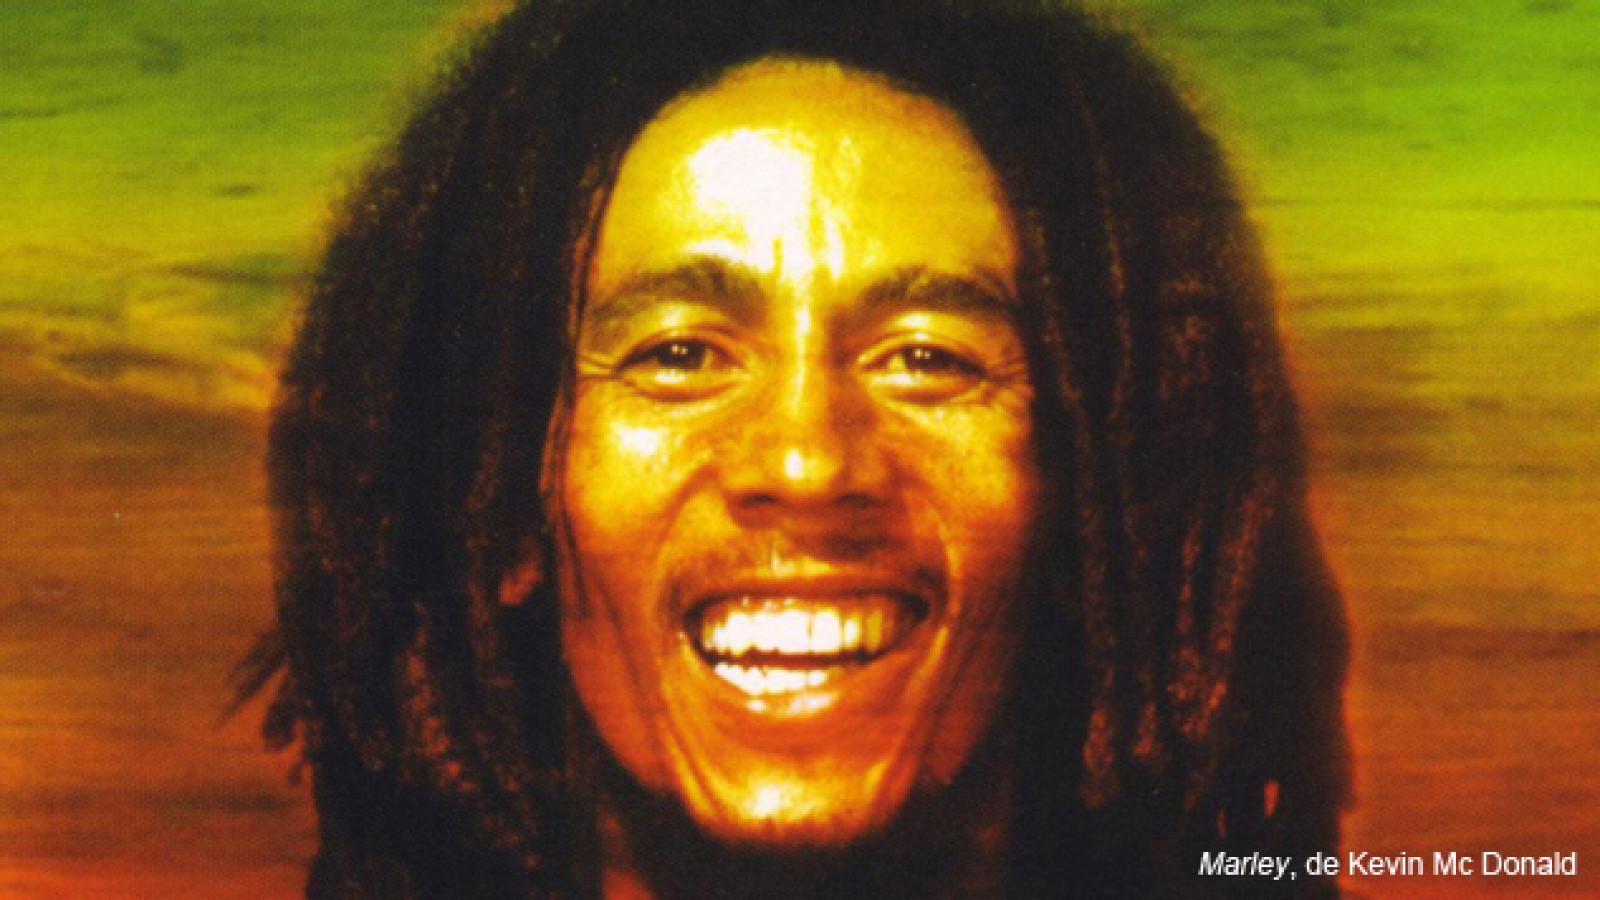 Marley, de Kevin Mc Donald